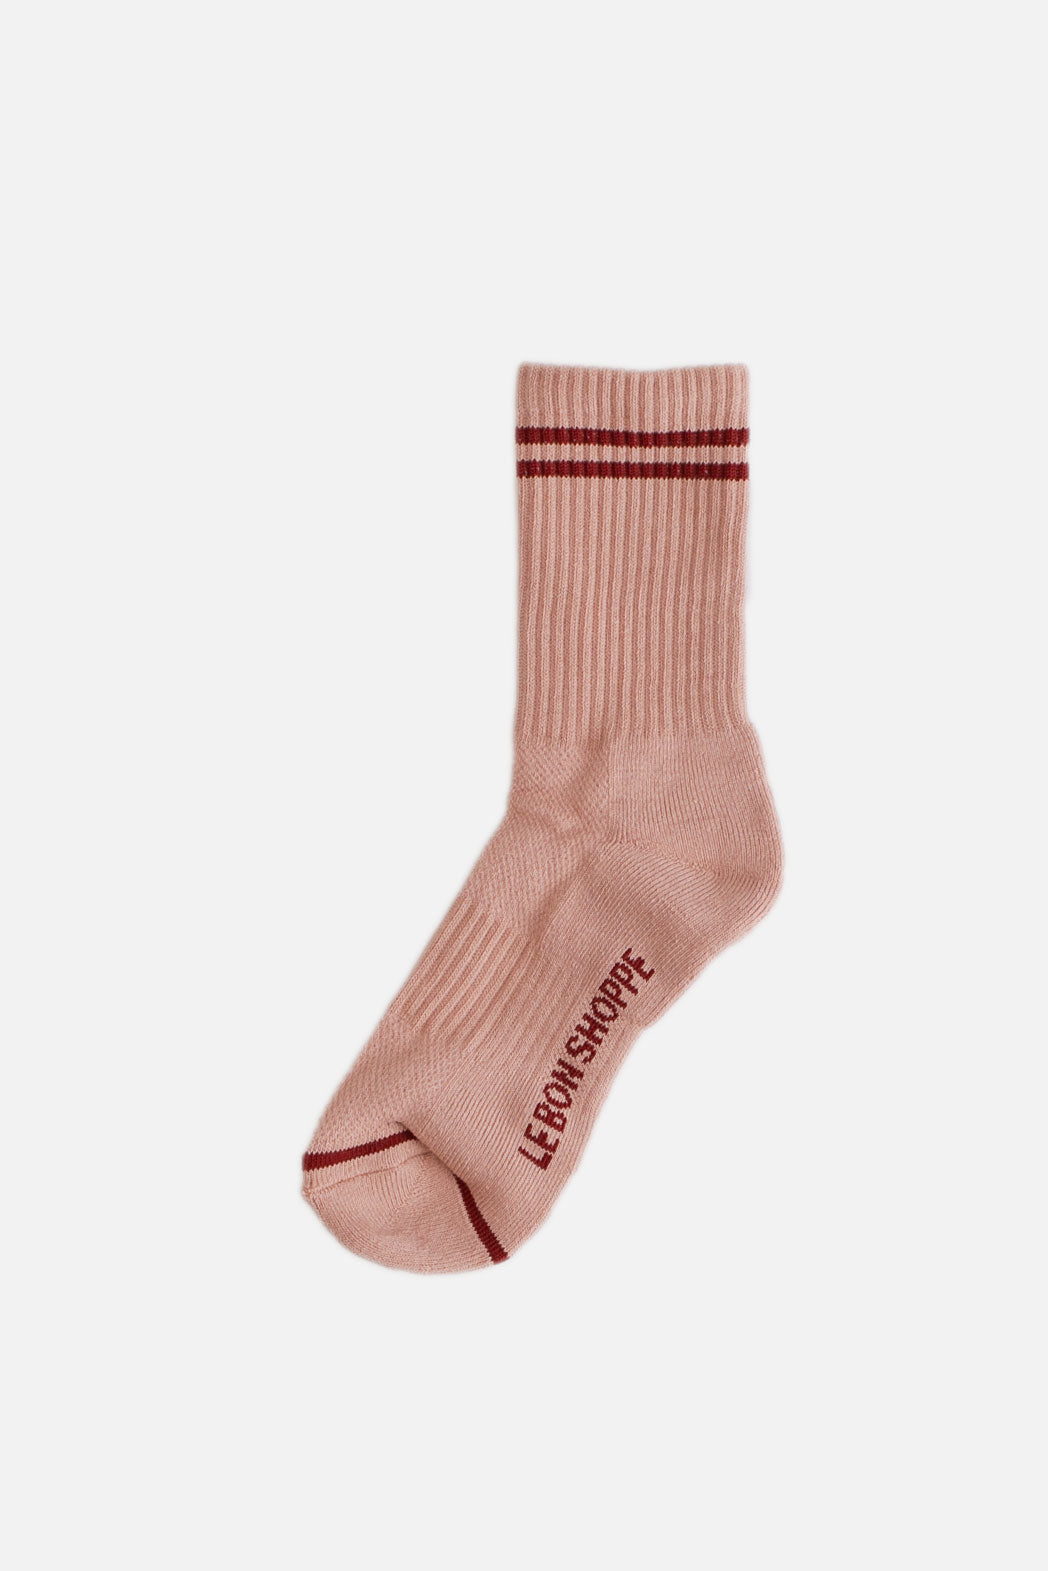 Le Bon Boyfriend Socks / Vintage Pink